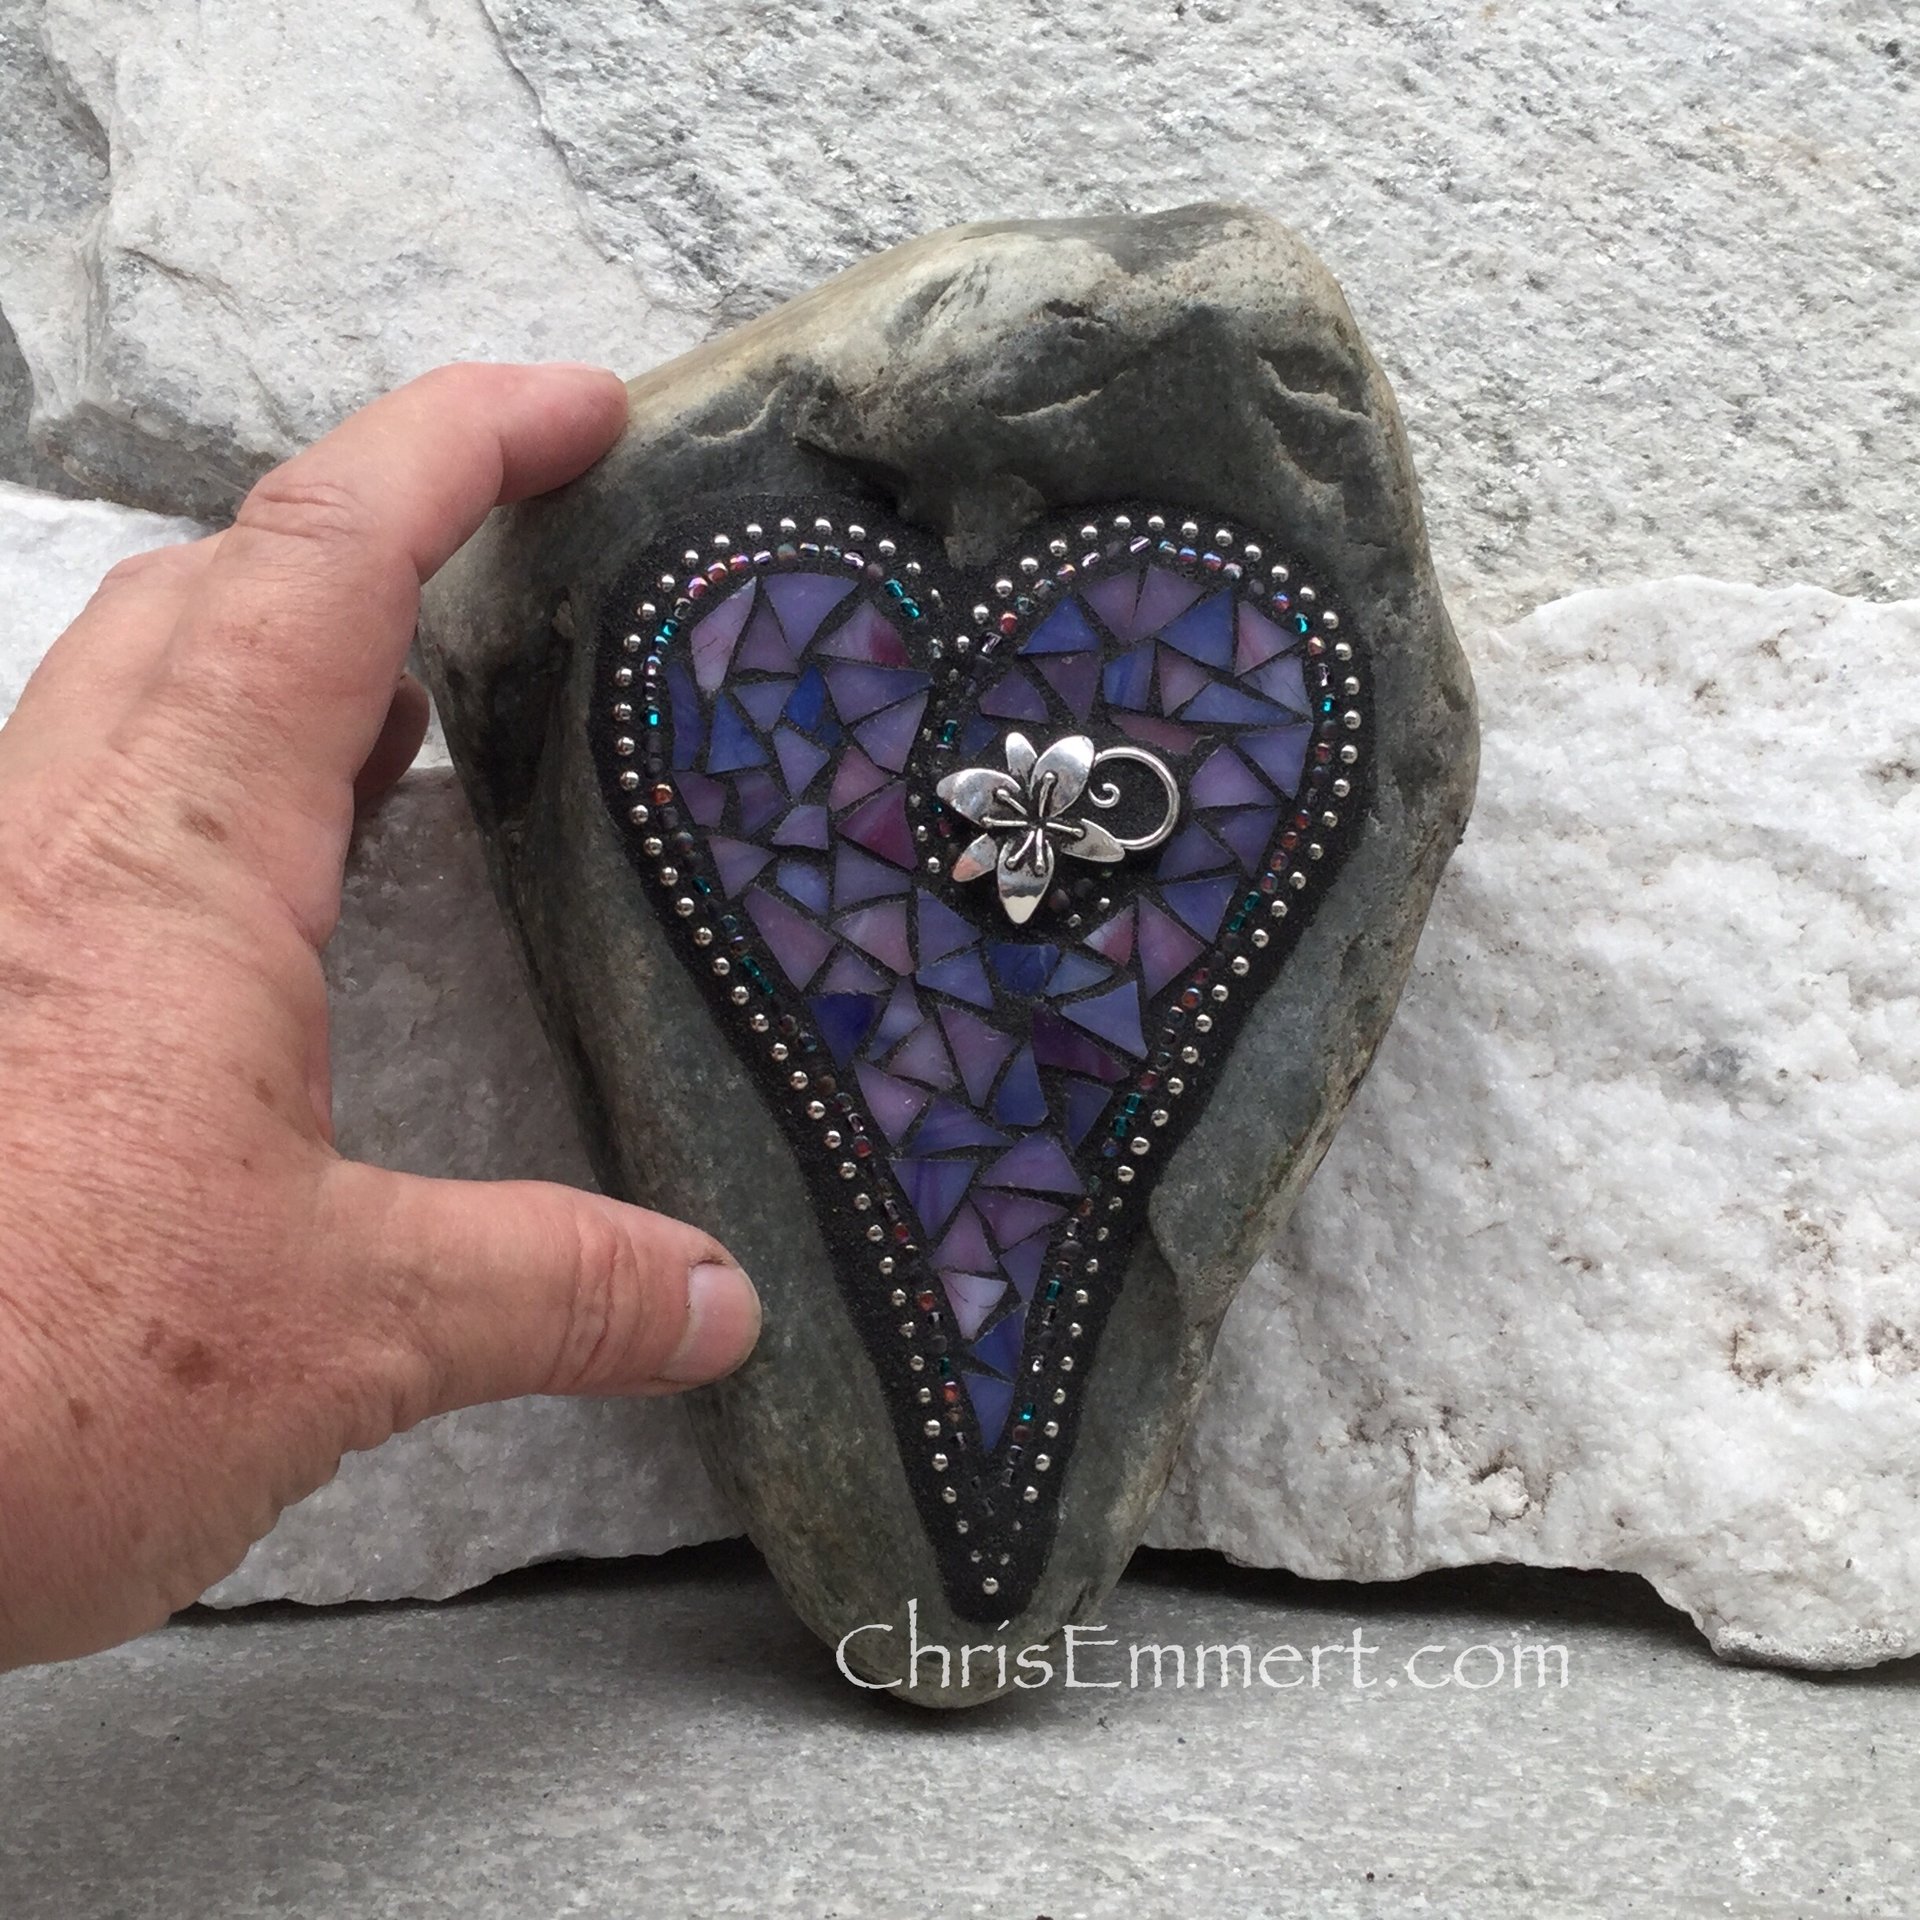 Purple Mosaic Heart, Lily, Garden Stone,  Gardener Gift, Home Decor, Garden Decor,